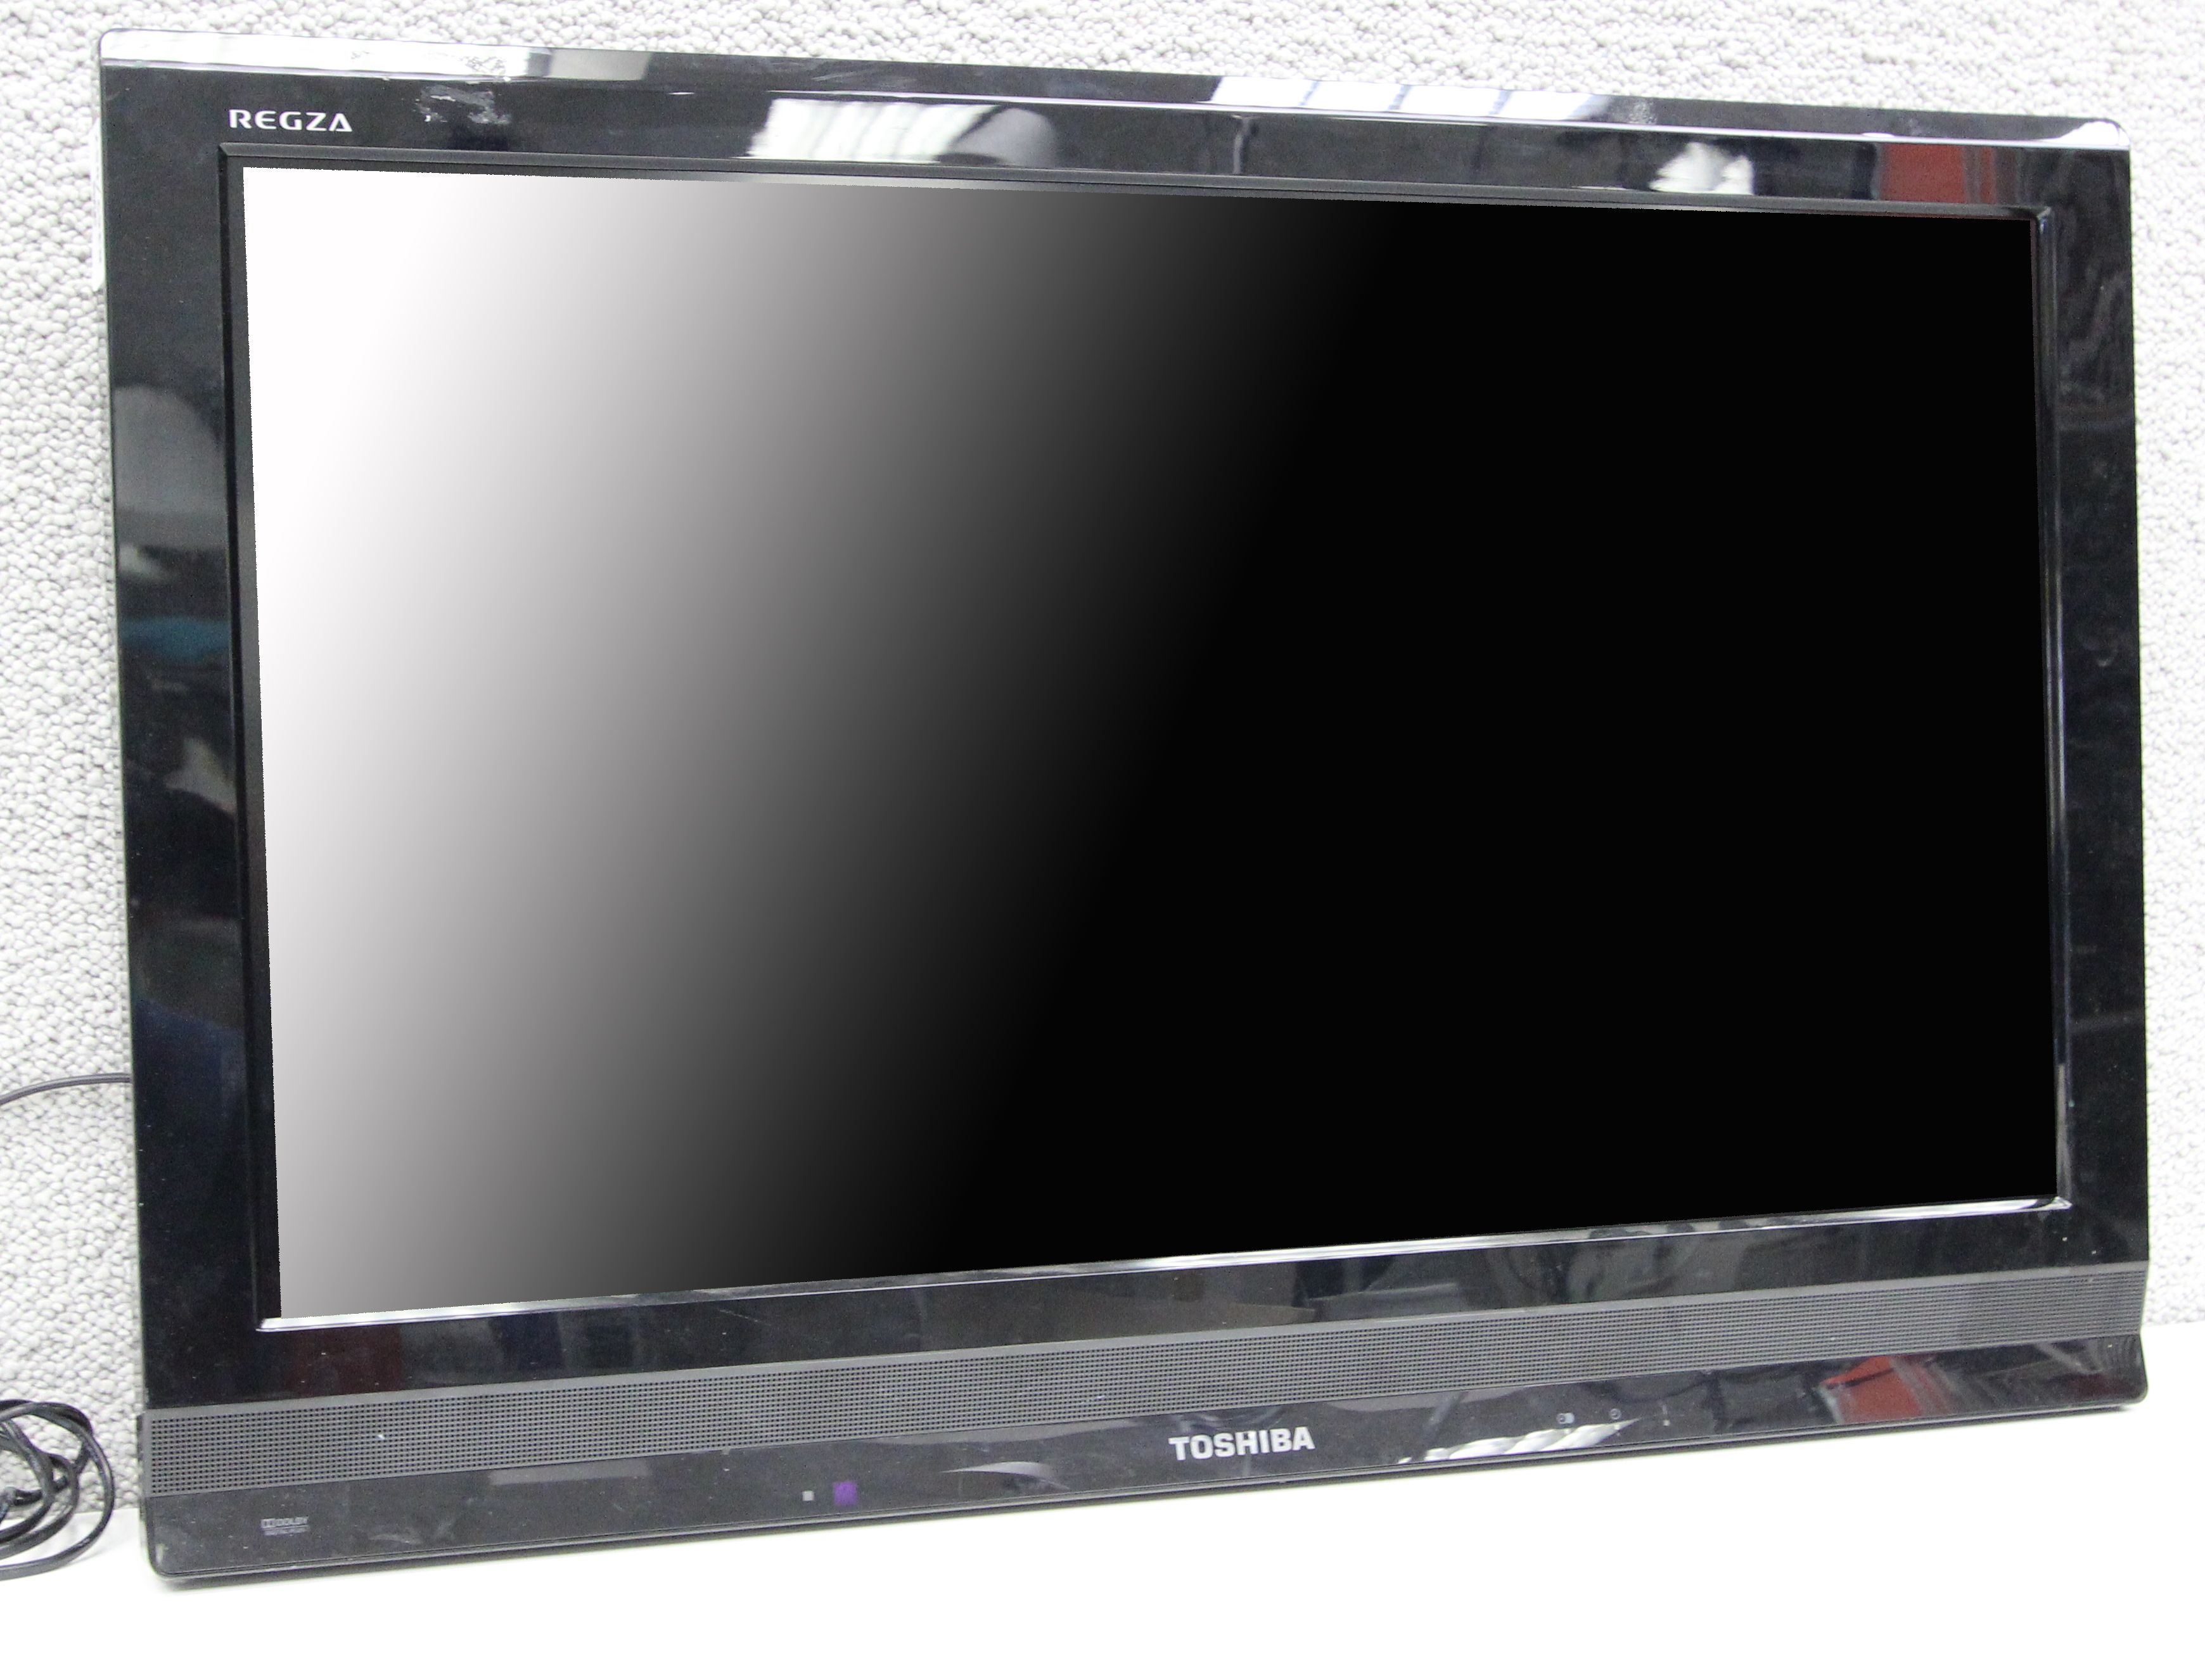 TELEVISEUR DE MARQUE TOSHIBA. MODELE REGZA. ECRAN LCD DE 30 POUCES. 1 UNITE.